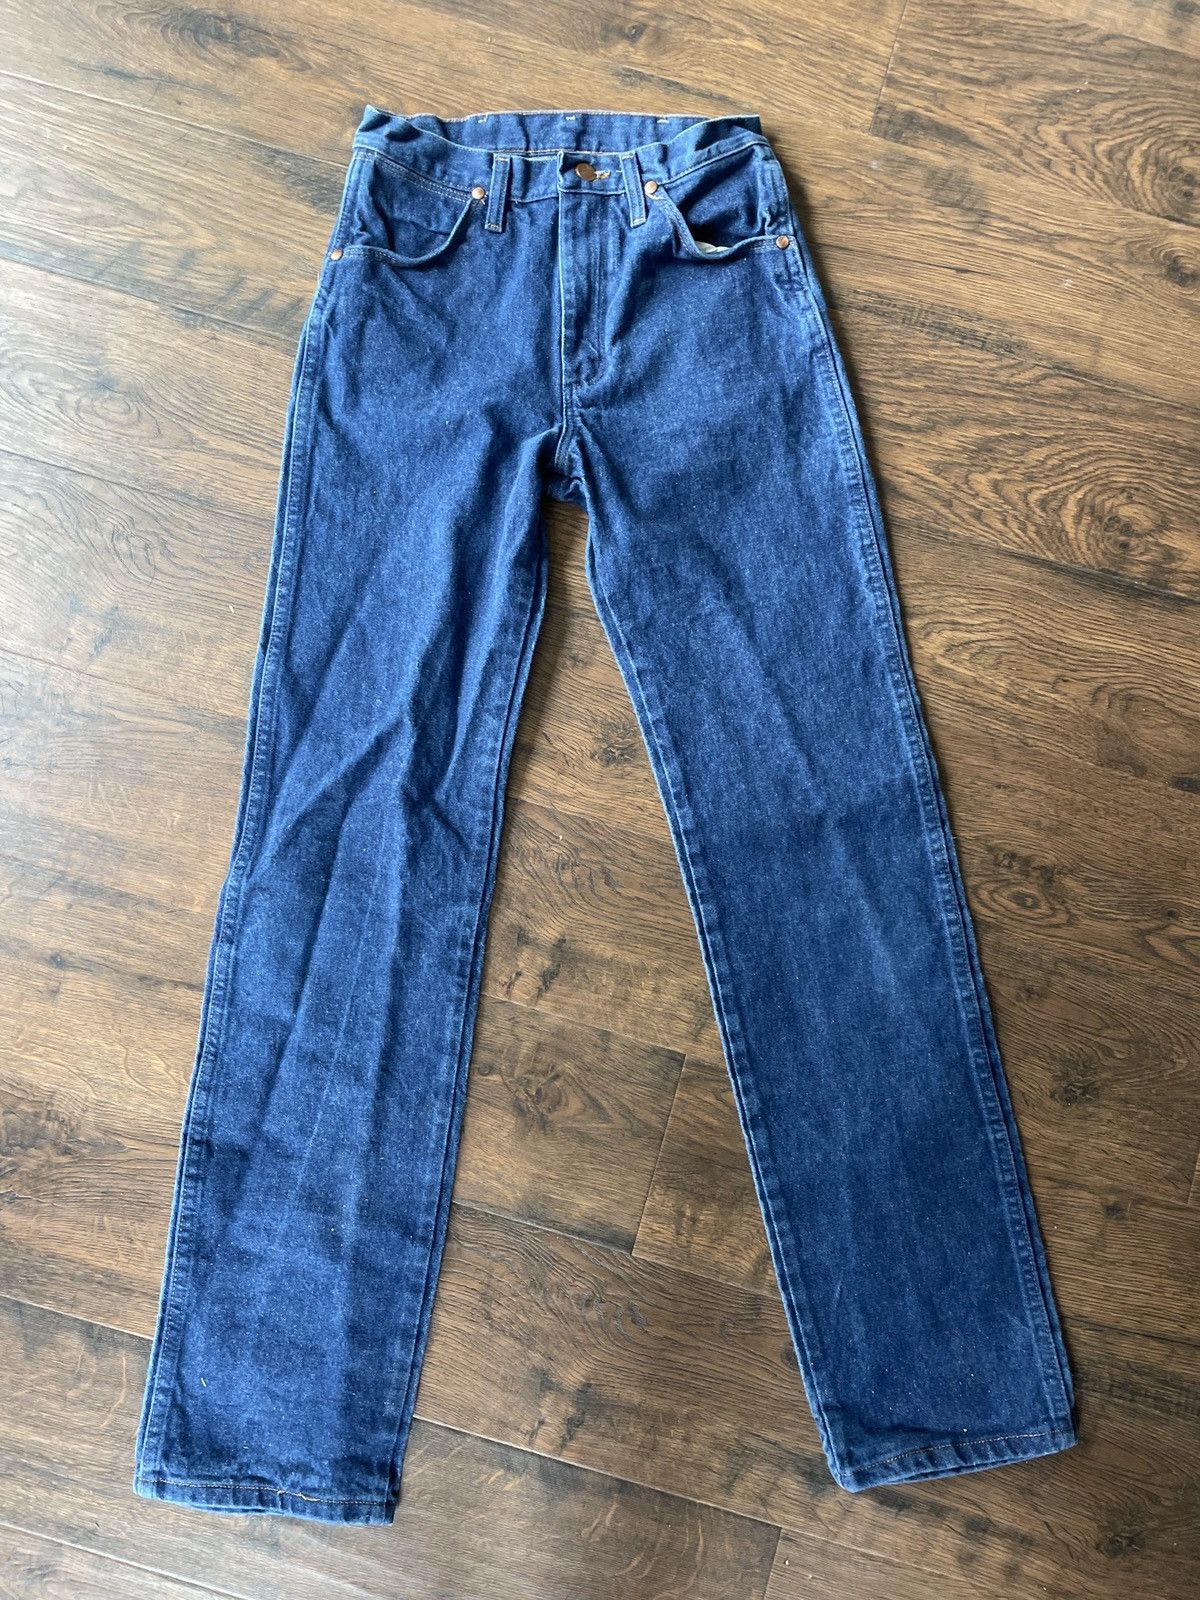 Wrangler wrangler jeans Size US 29 - 1 Preview